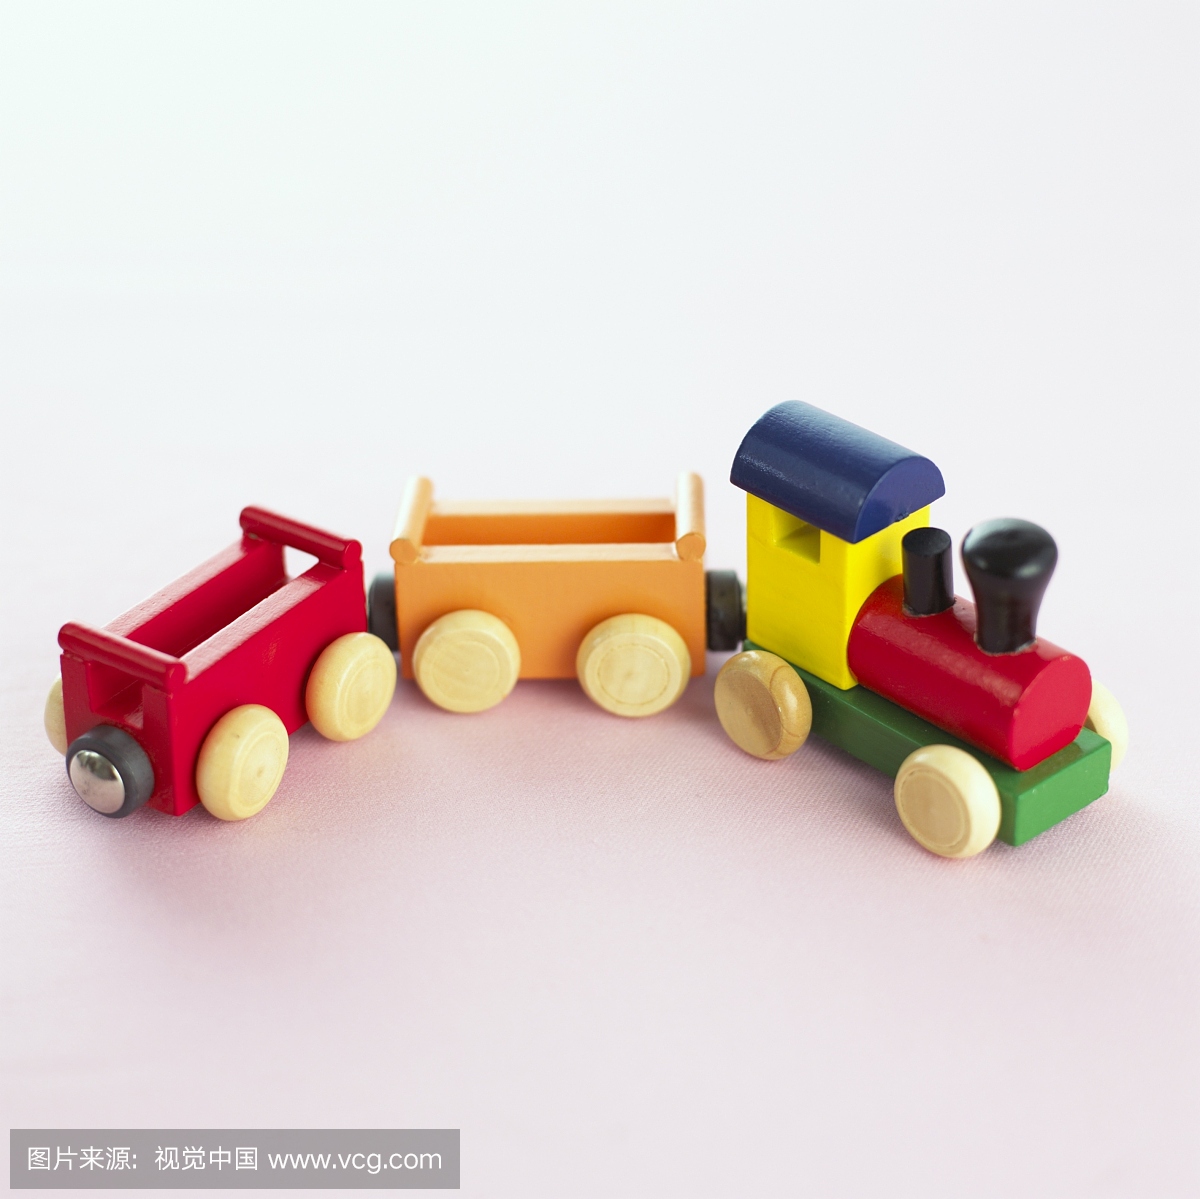 一个简单的木制玩具火车与两个车厢。